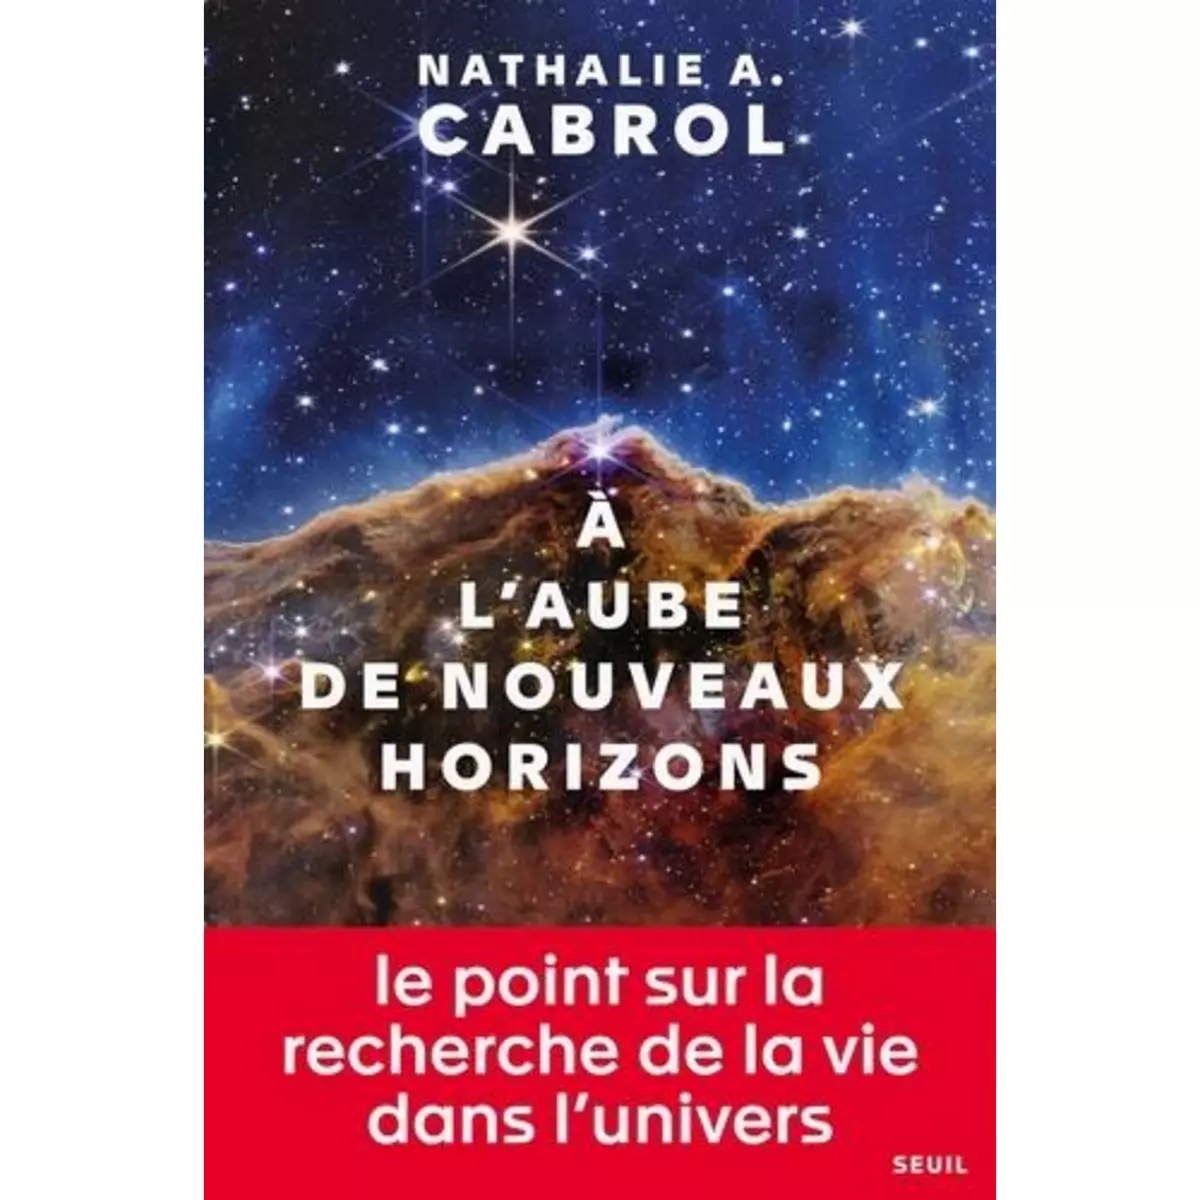  A L'AUBE DE NOUVEAUX HORIZONS, Cabrol Nathalie A.